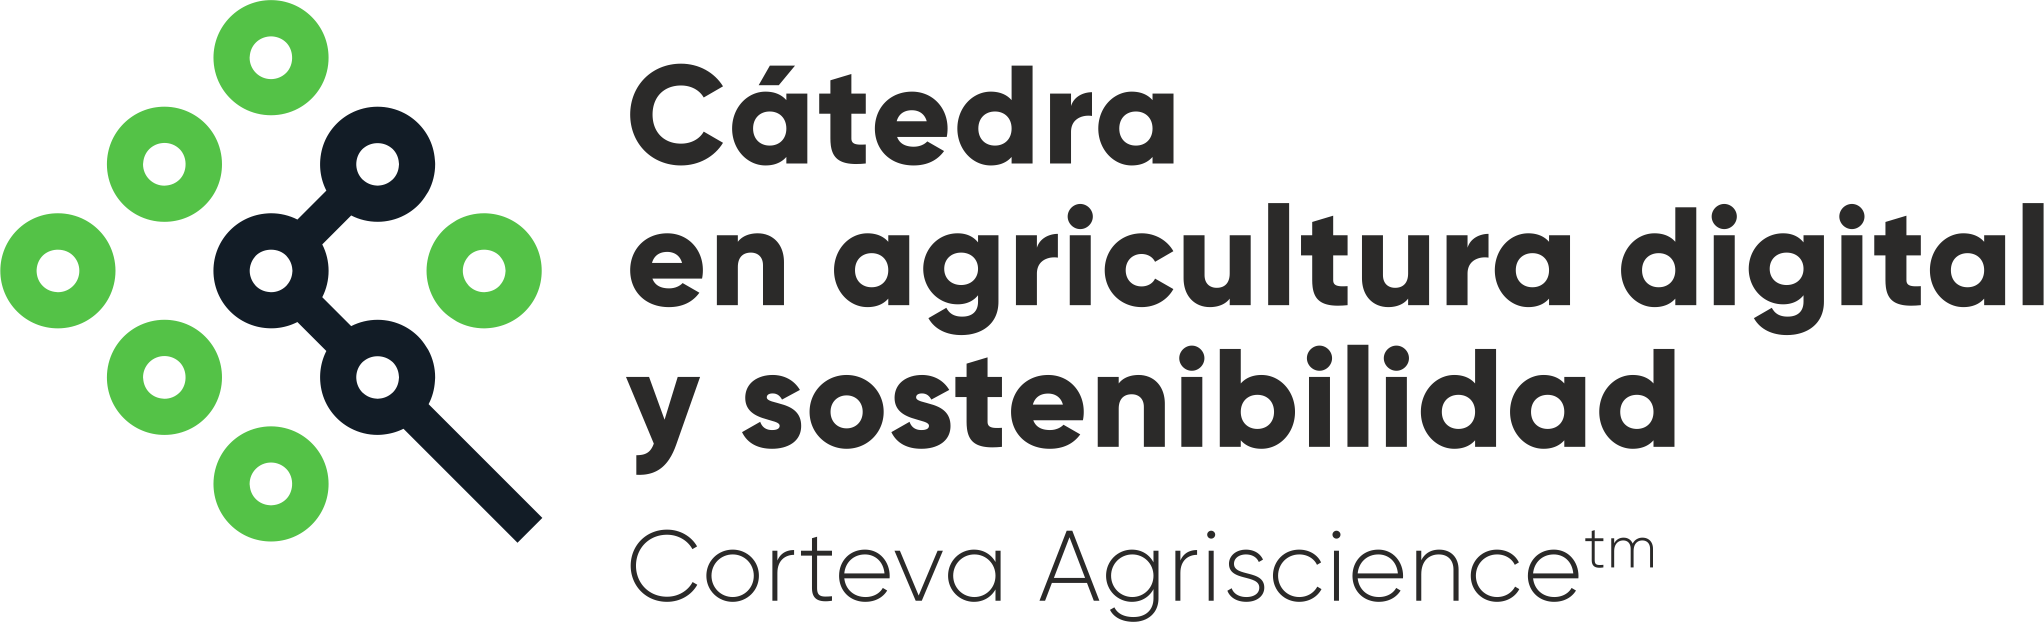 logo_catedra_corteva